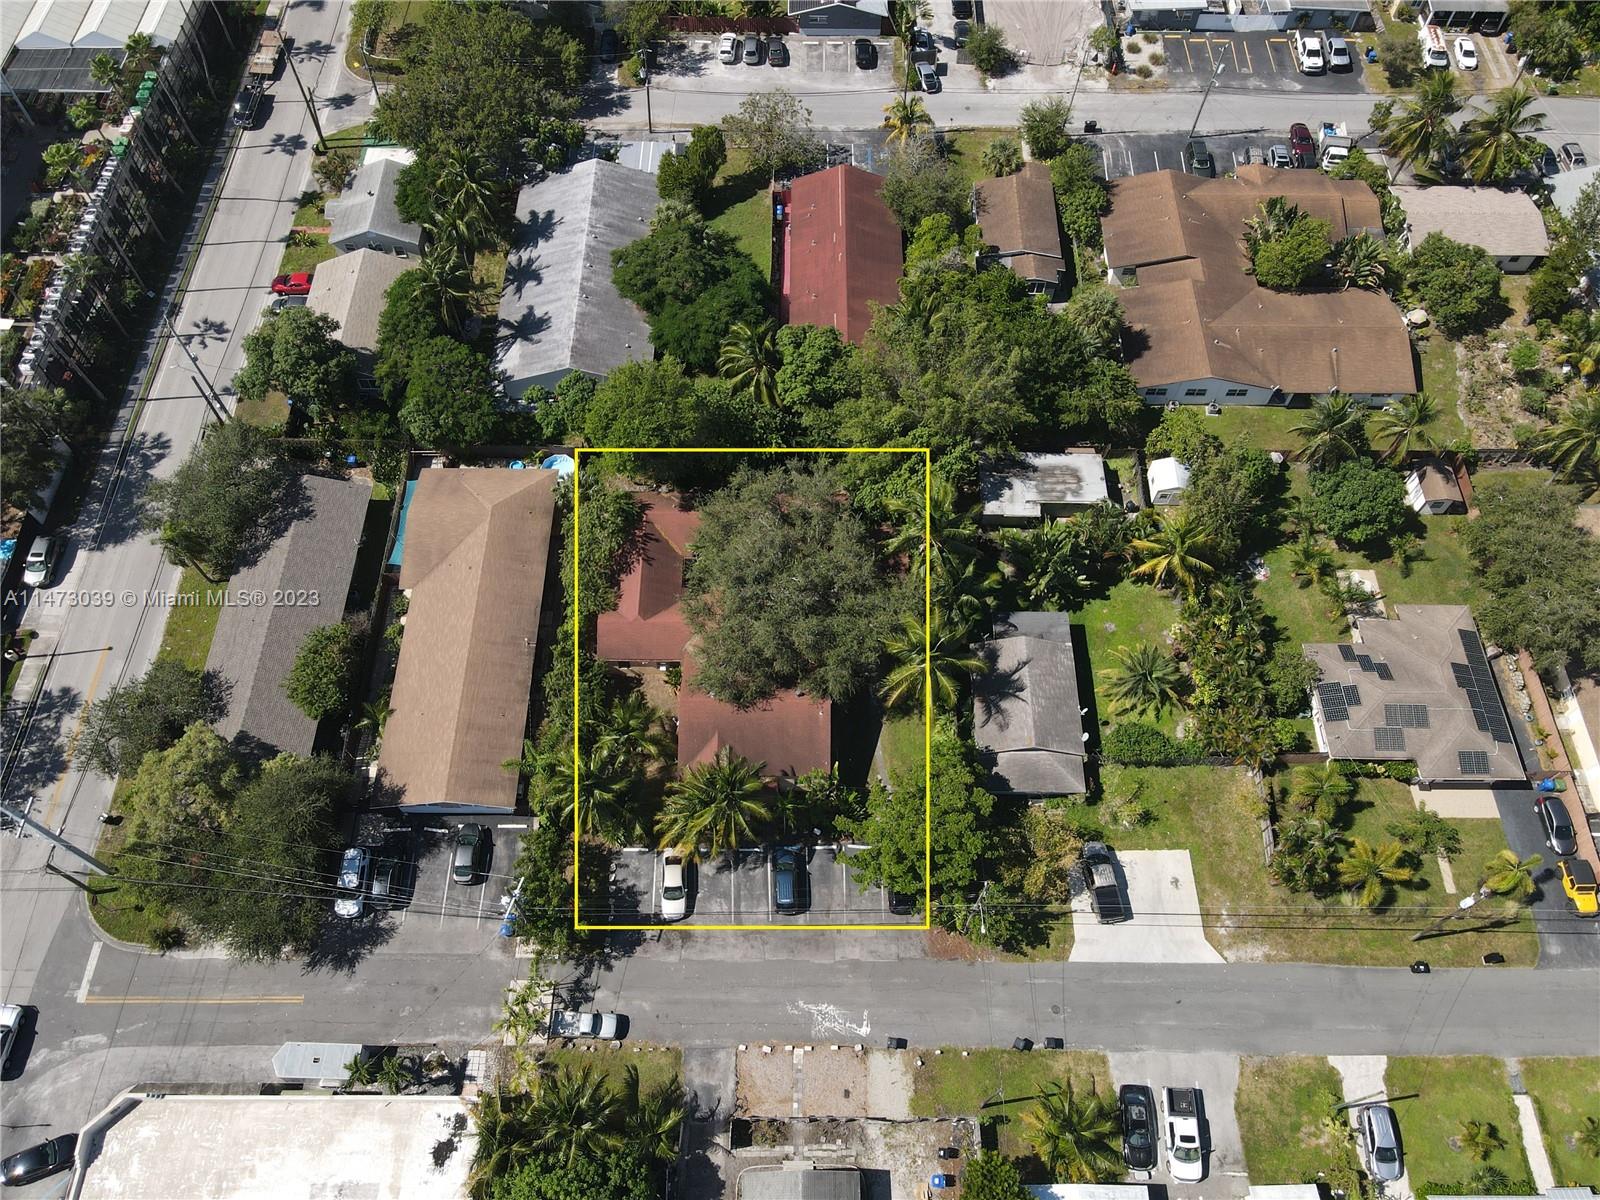 Rental Property at 1111 Ne 5th Ter Ter, Fort Lauderdale, Broward County, Florida -  - $1,400,000 MO.